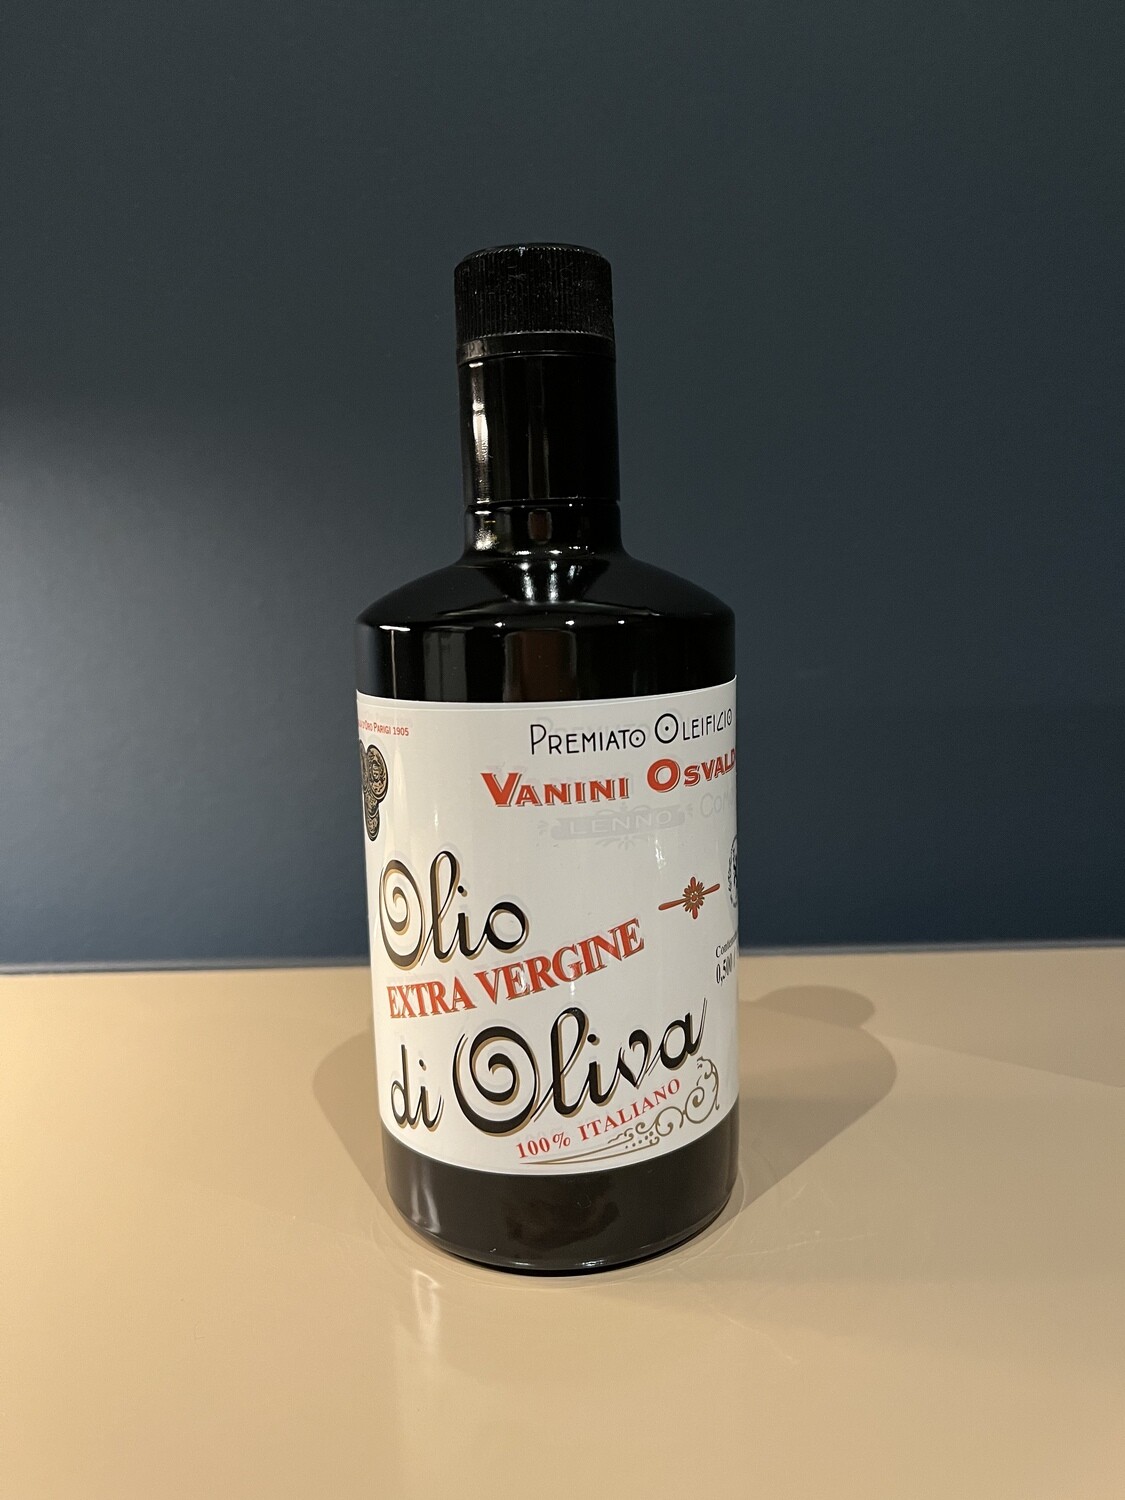 Osvaldo VANINI Olivenöl 0,25 Liter
Ein Olivenöl der Extraklasse! Kaltgepresst, extra-vergine, säurearm. Seit mehr als sechs Generationen produziert die Familie VANINI dieses köstliche Olivenöl!